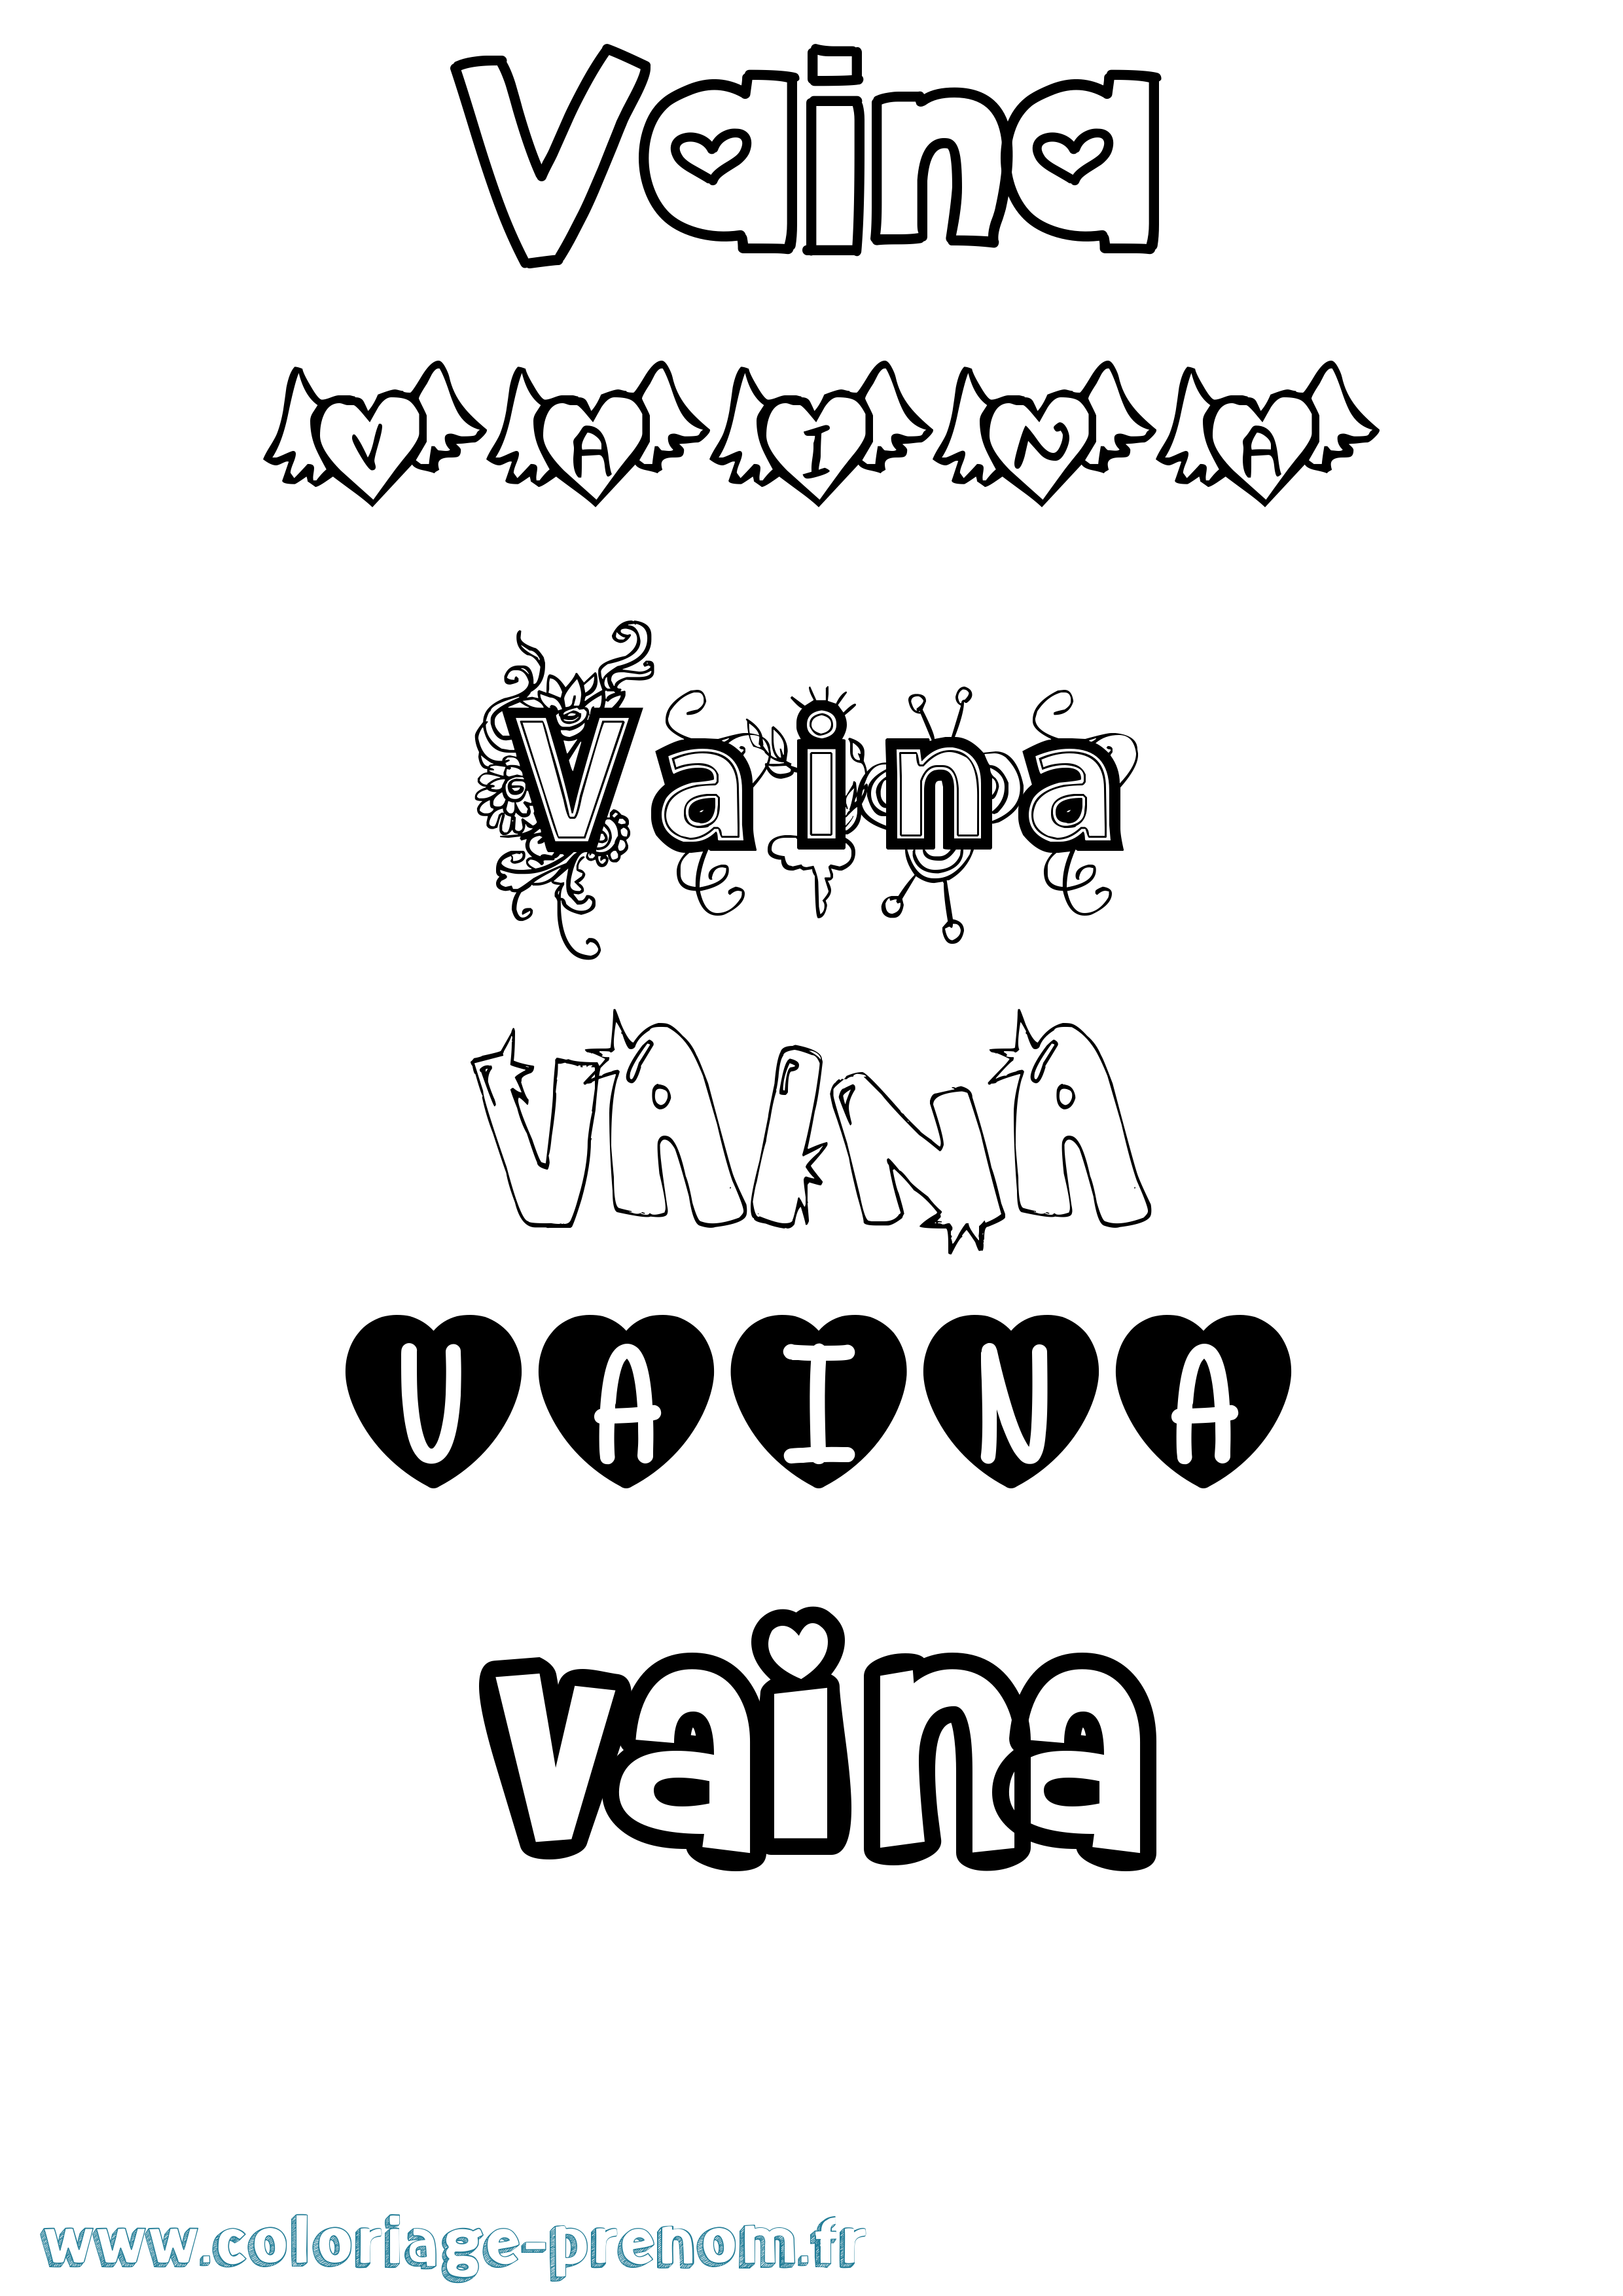 Coloriage prénom Vaina Girly